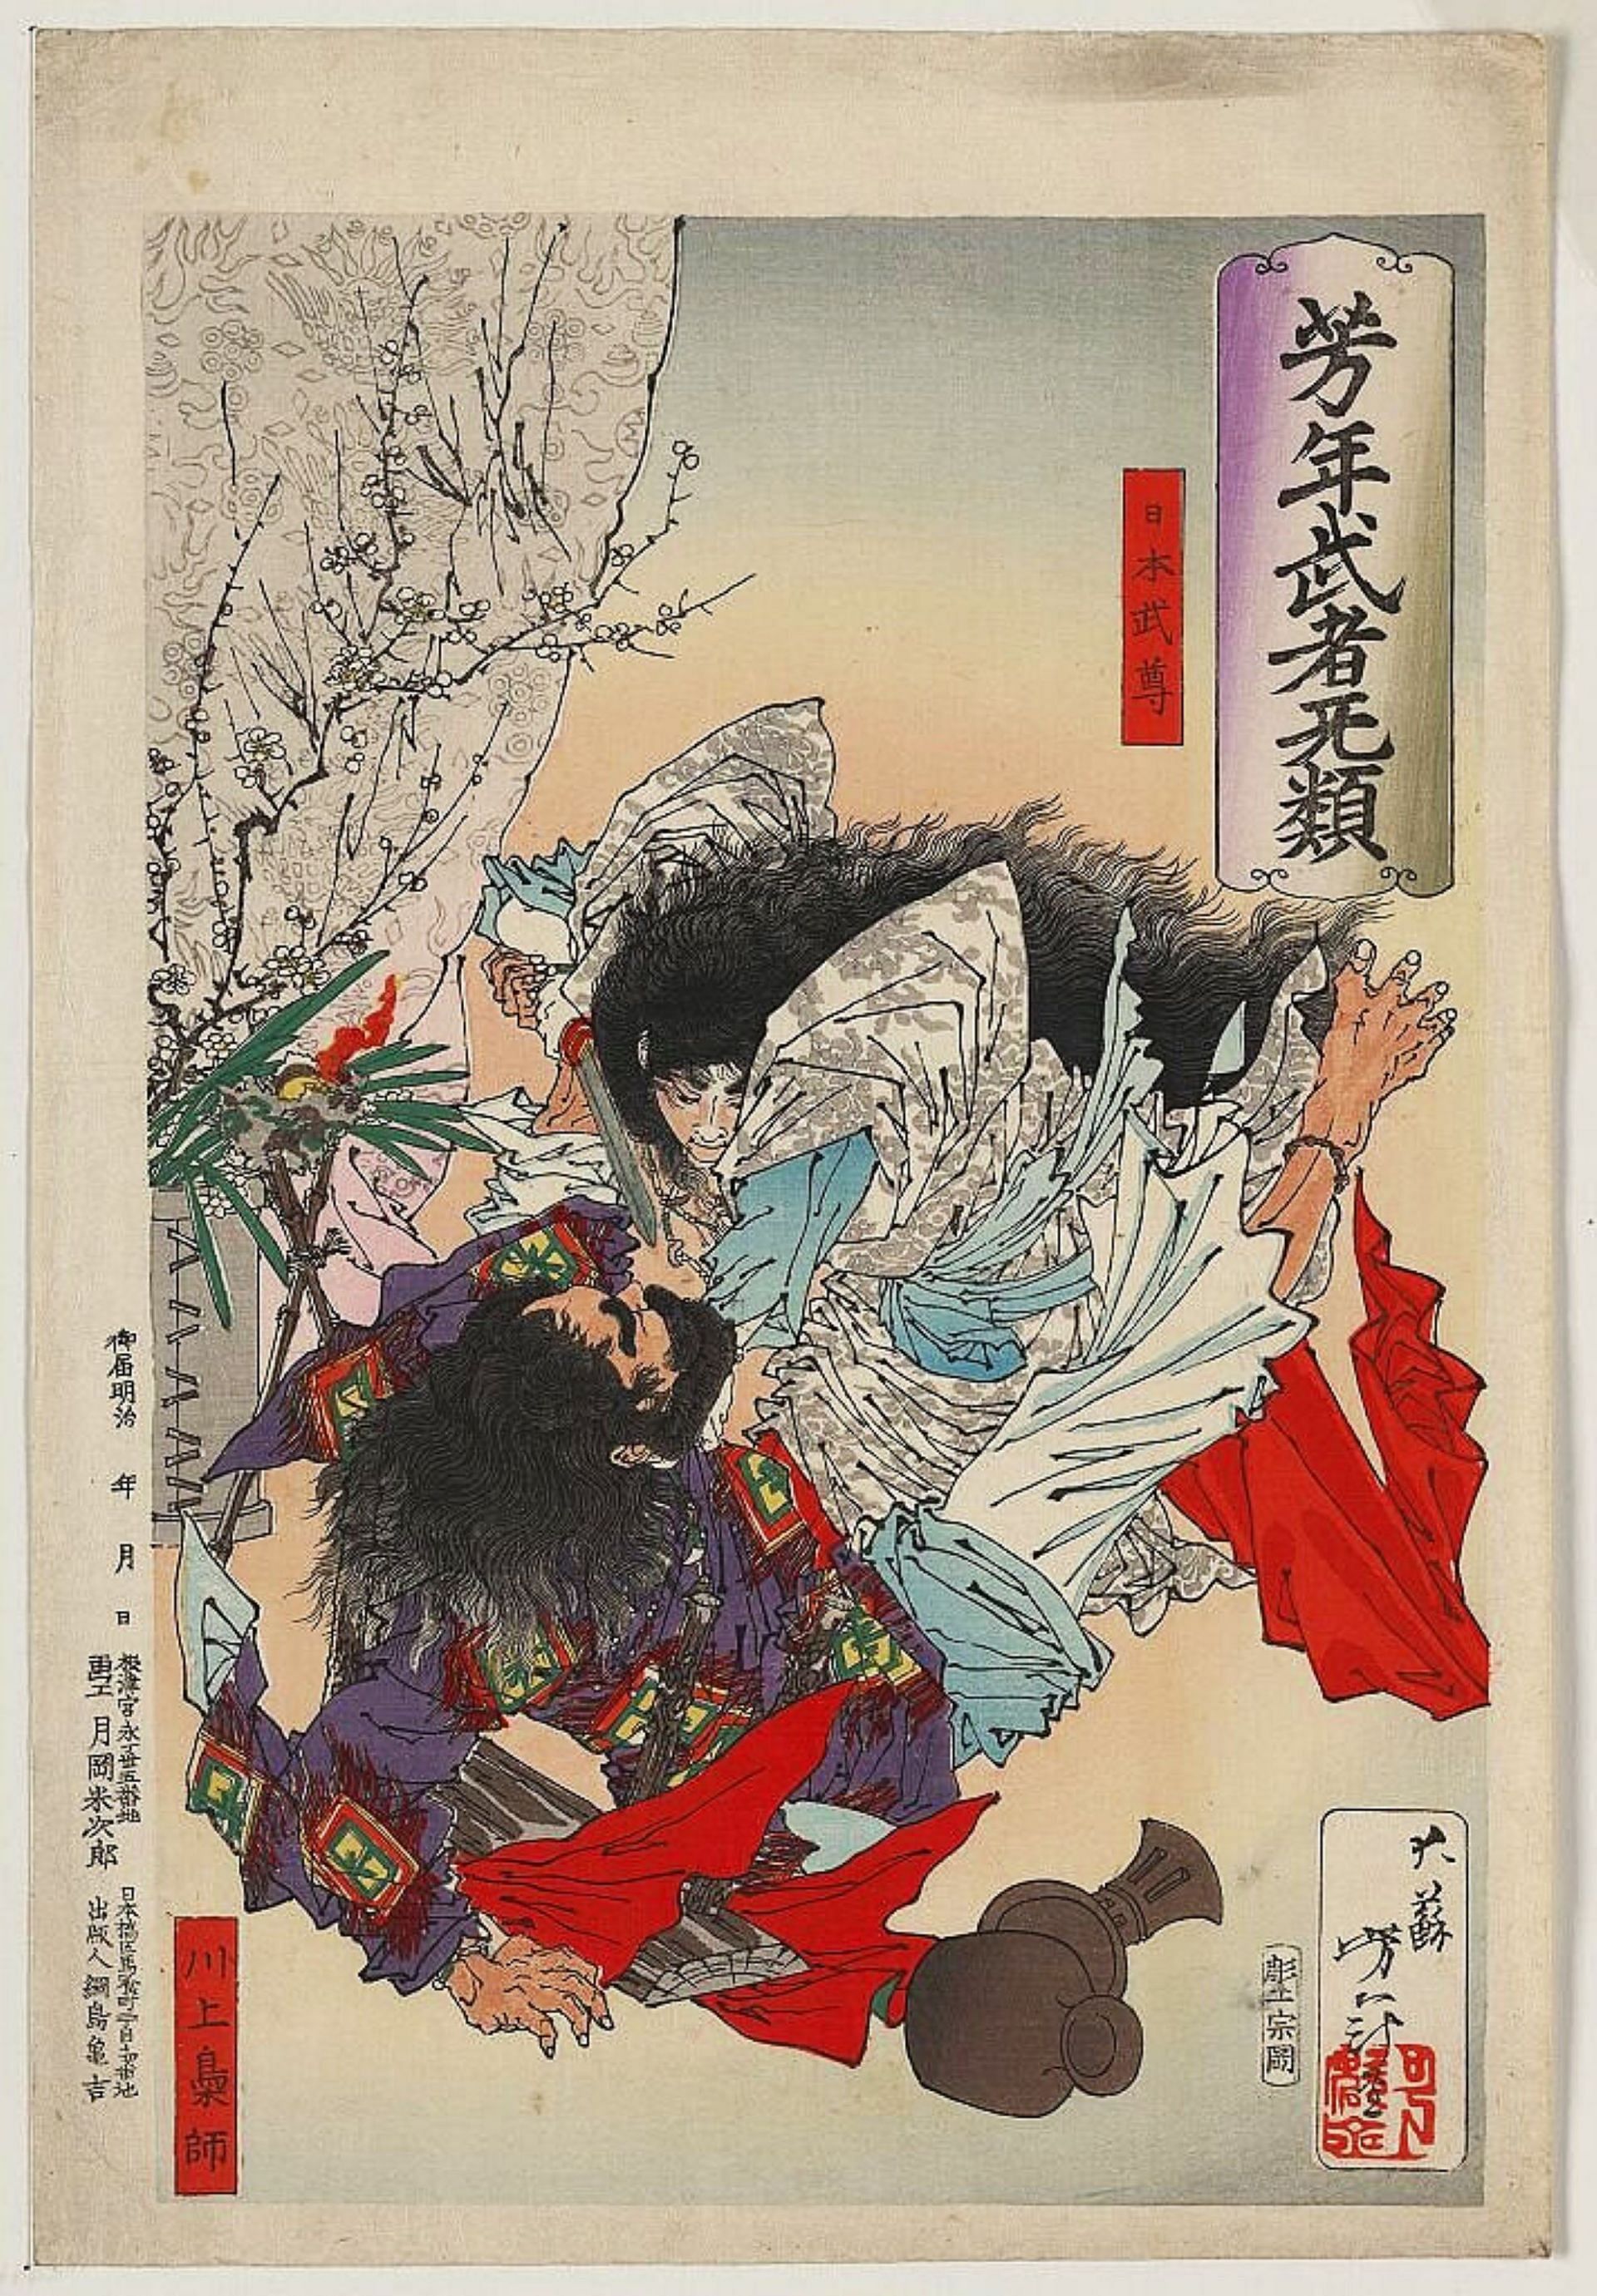 Yamato Takeru fiercely attacks the Kumaso leader (Image via Yoshitoshi’s Courageous Warriors/Tsukioka Yoshitoshi/Library of Congress)